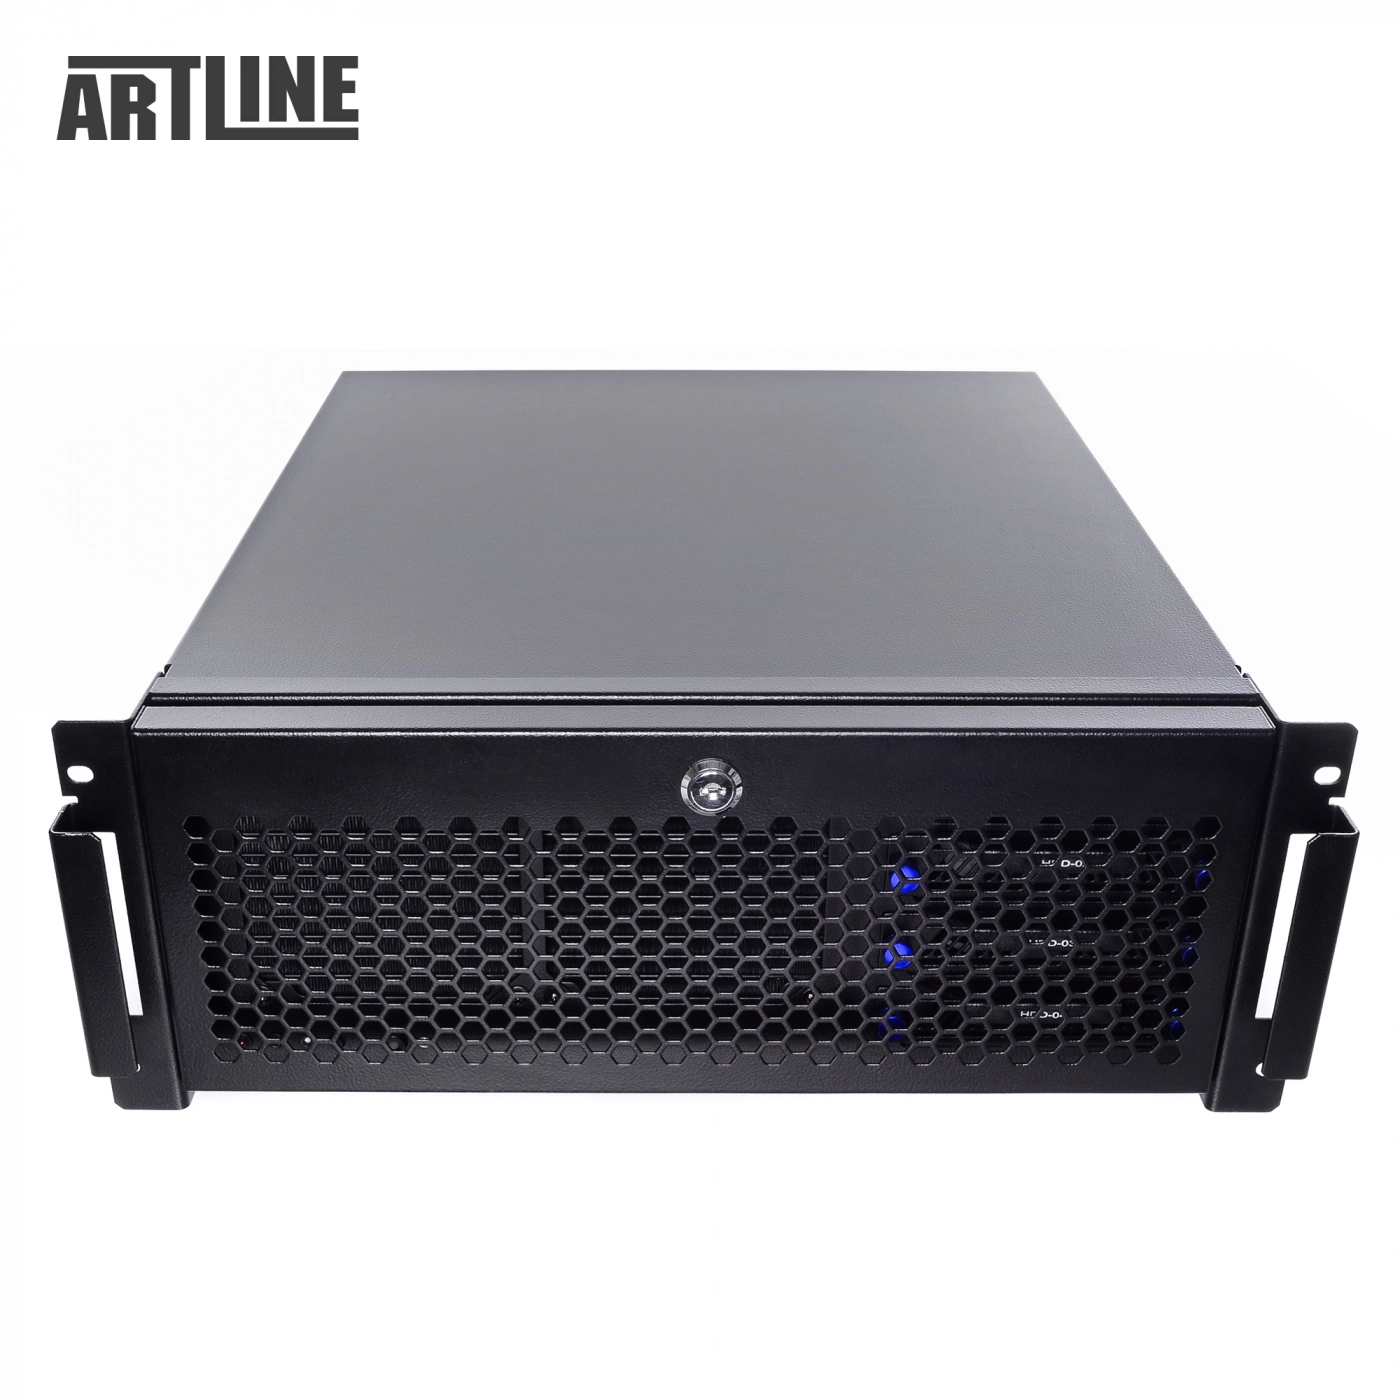 Купить Сервер ARTLINE Business R65v01 - фото 8